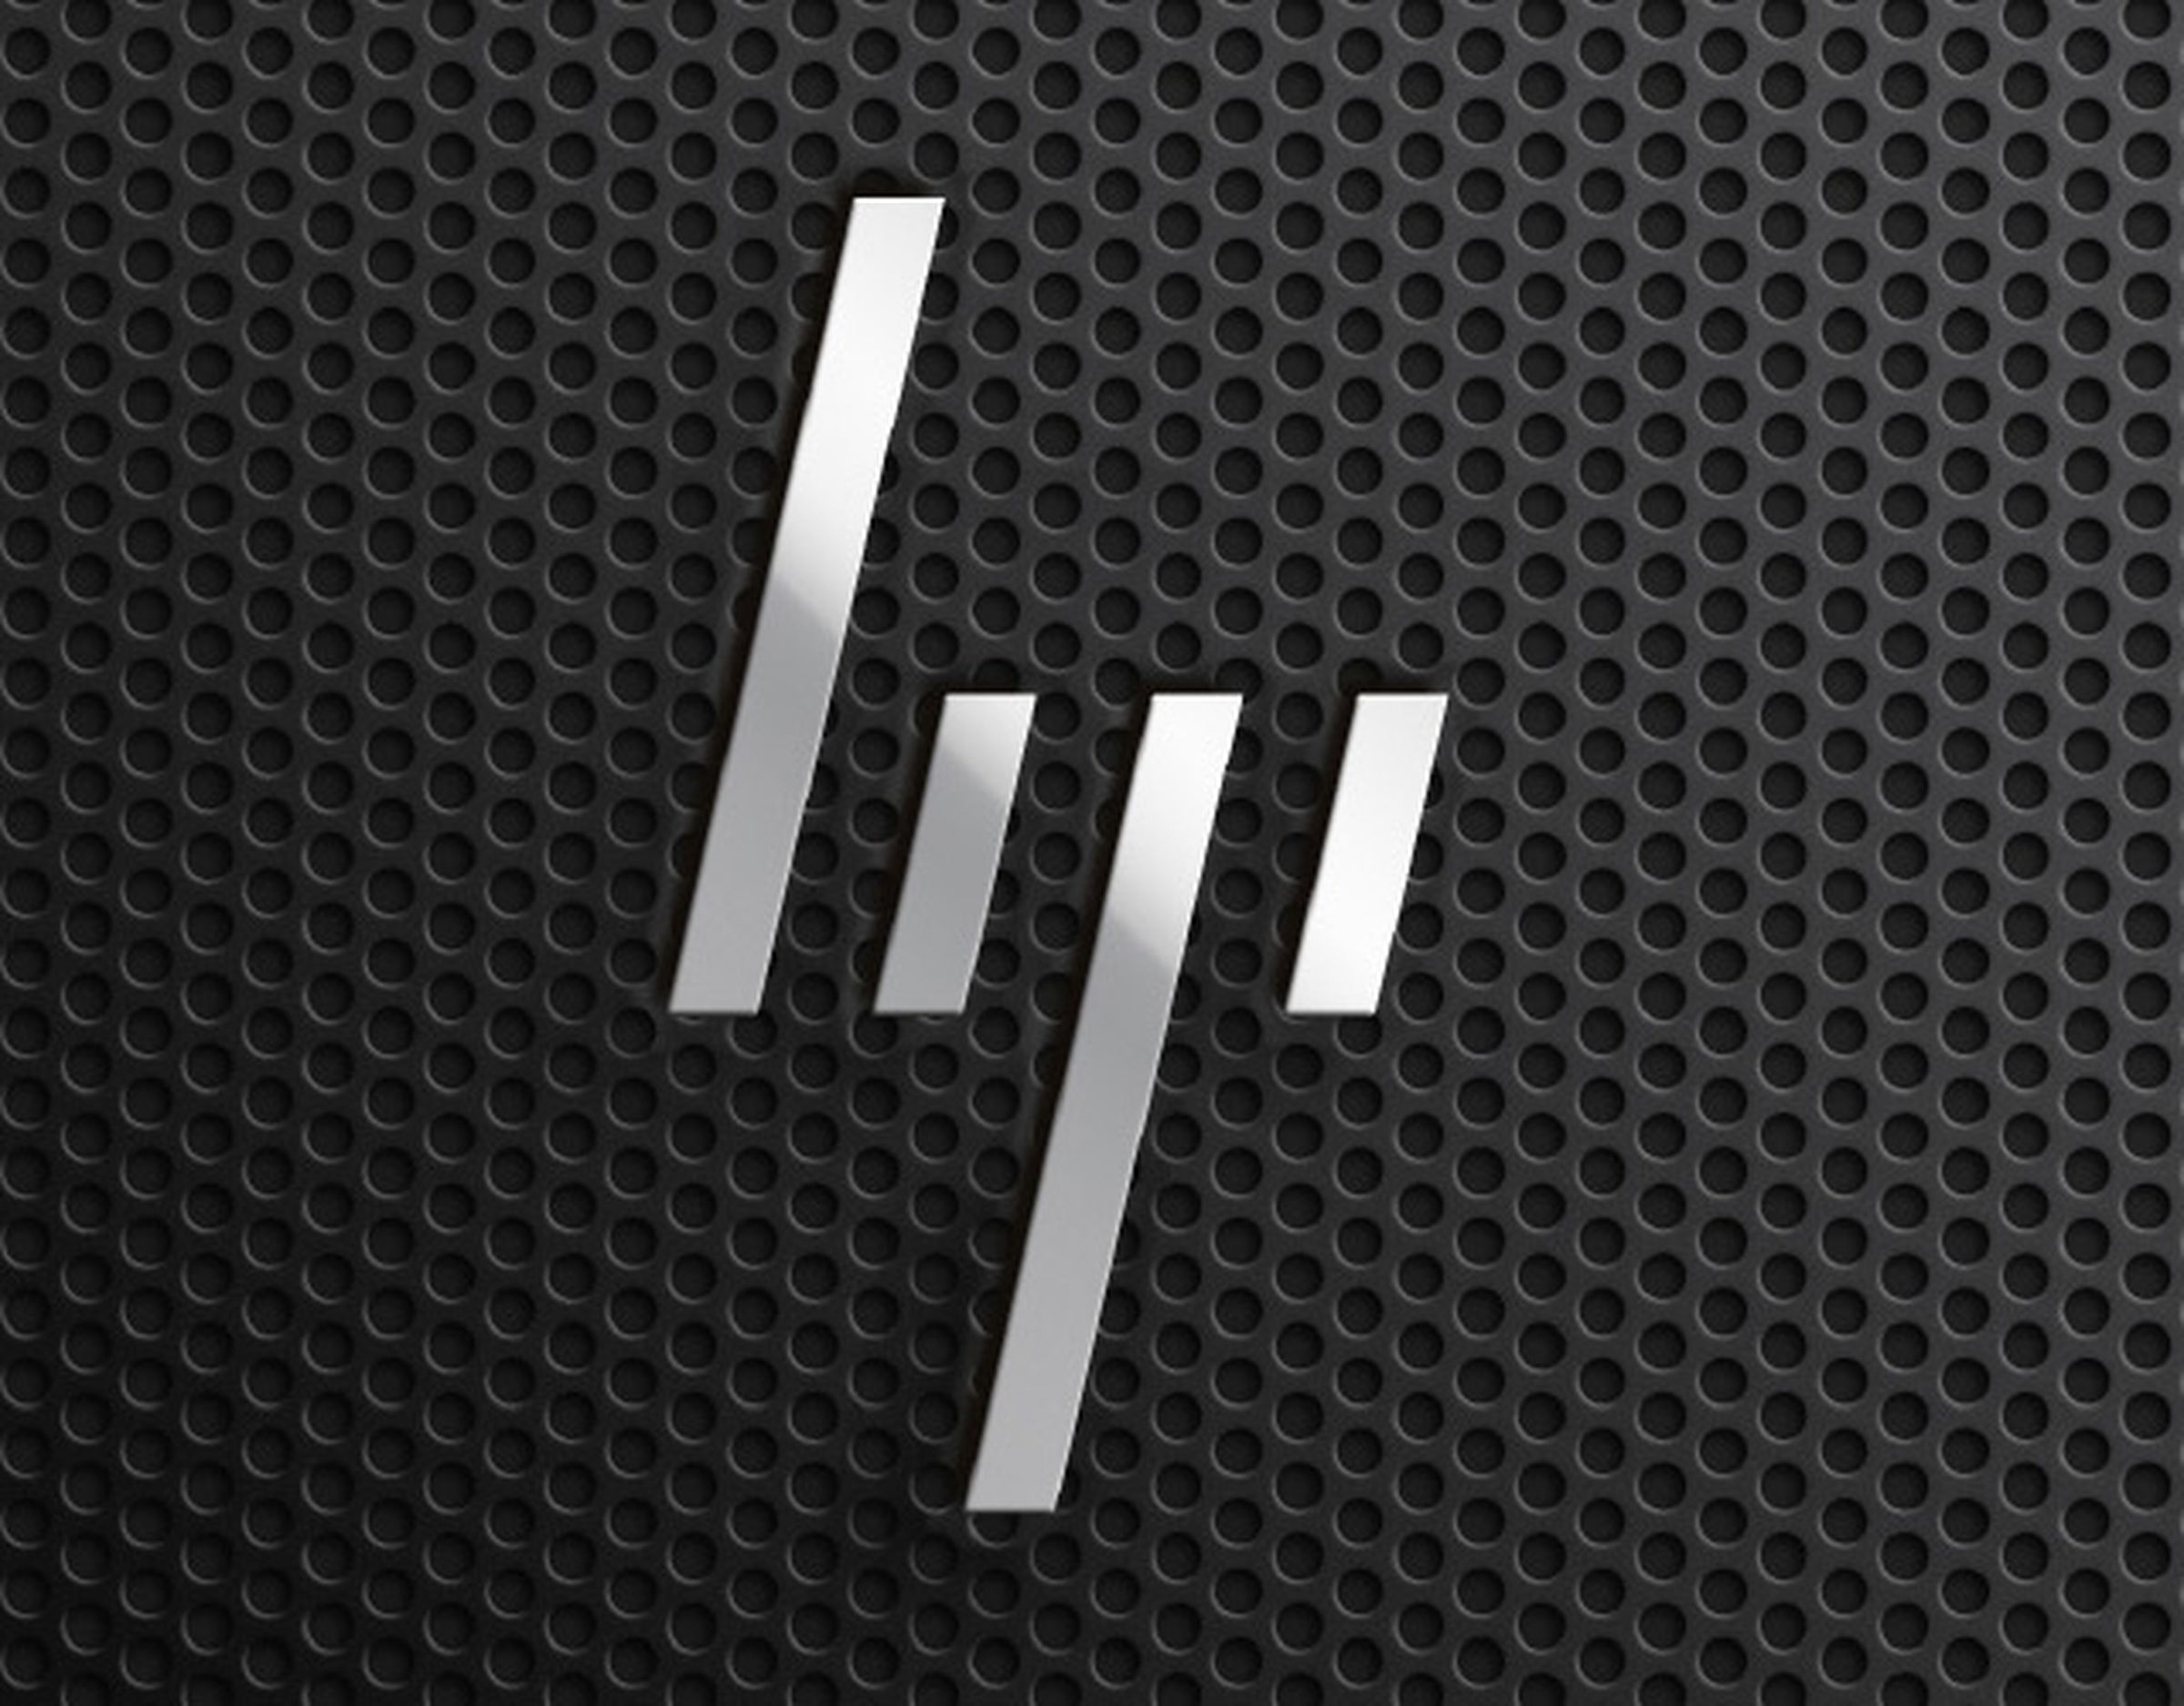 hp logo_640